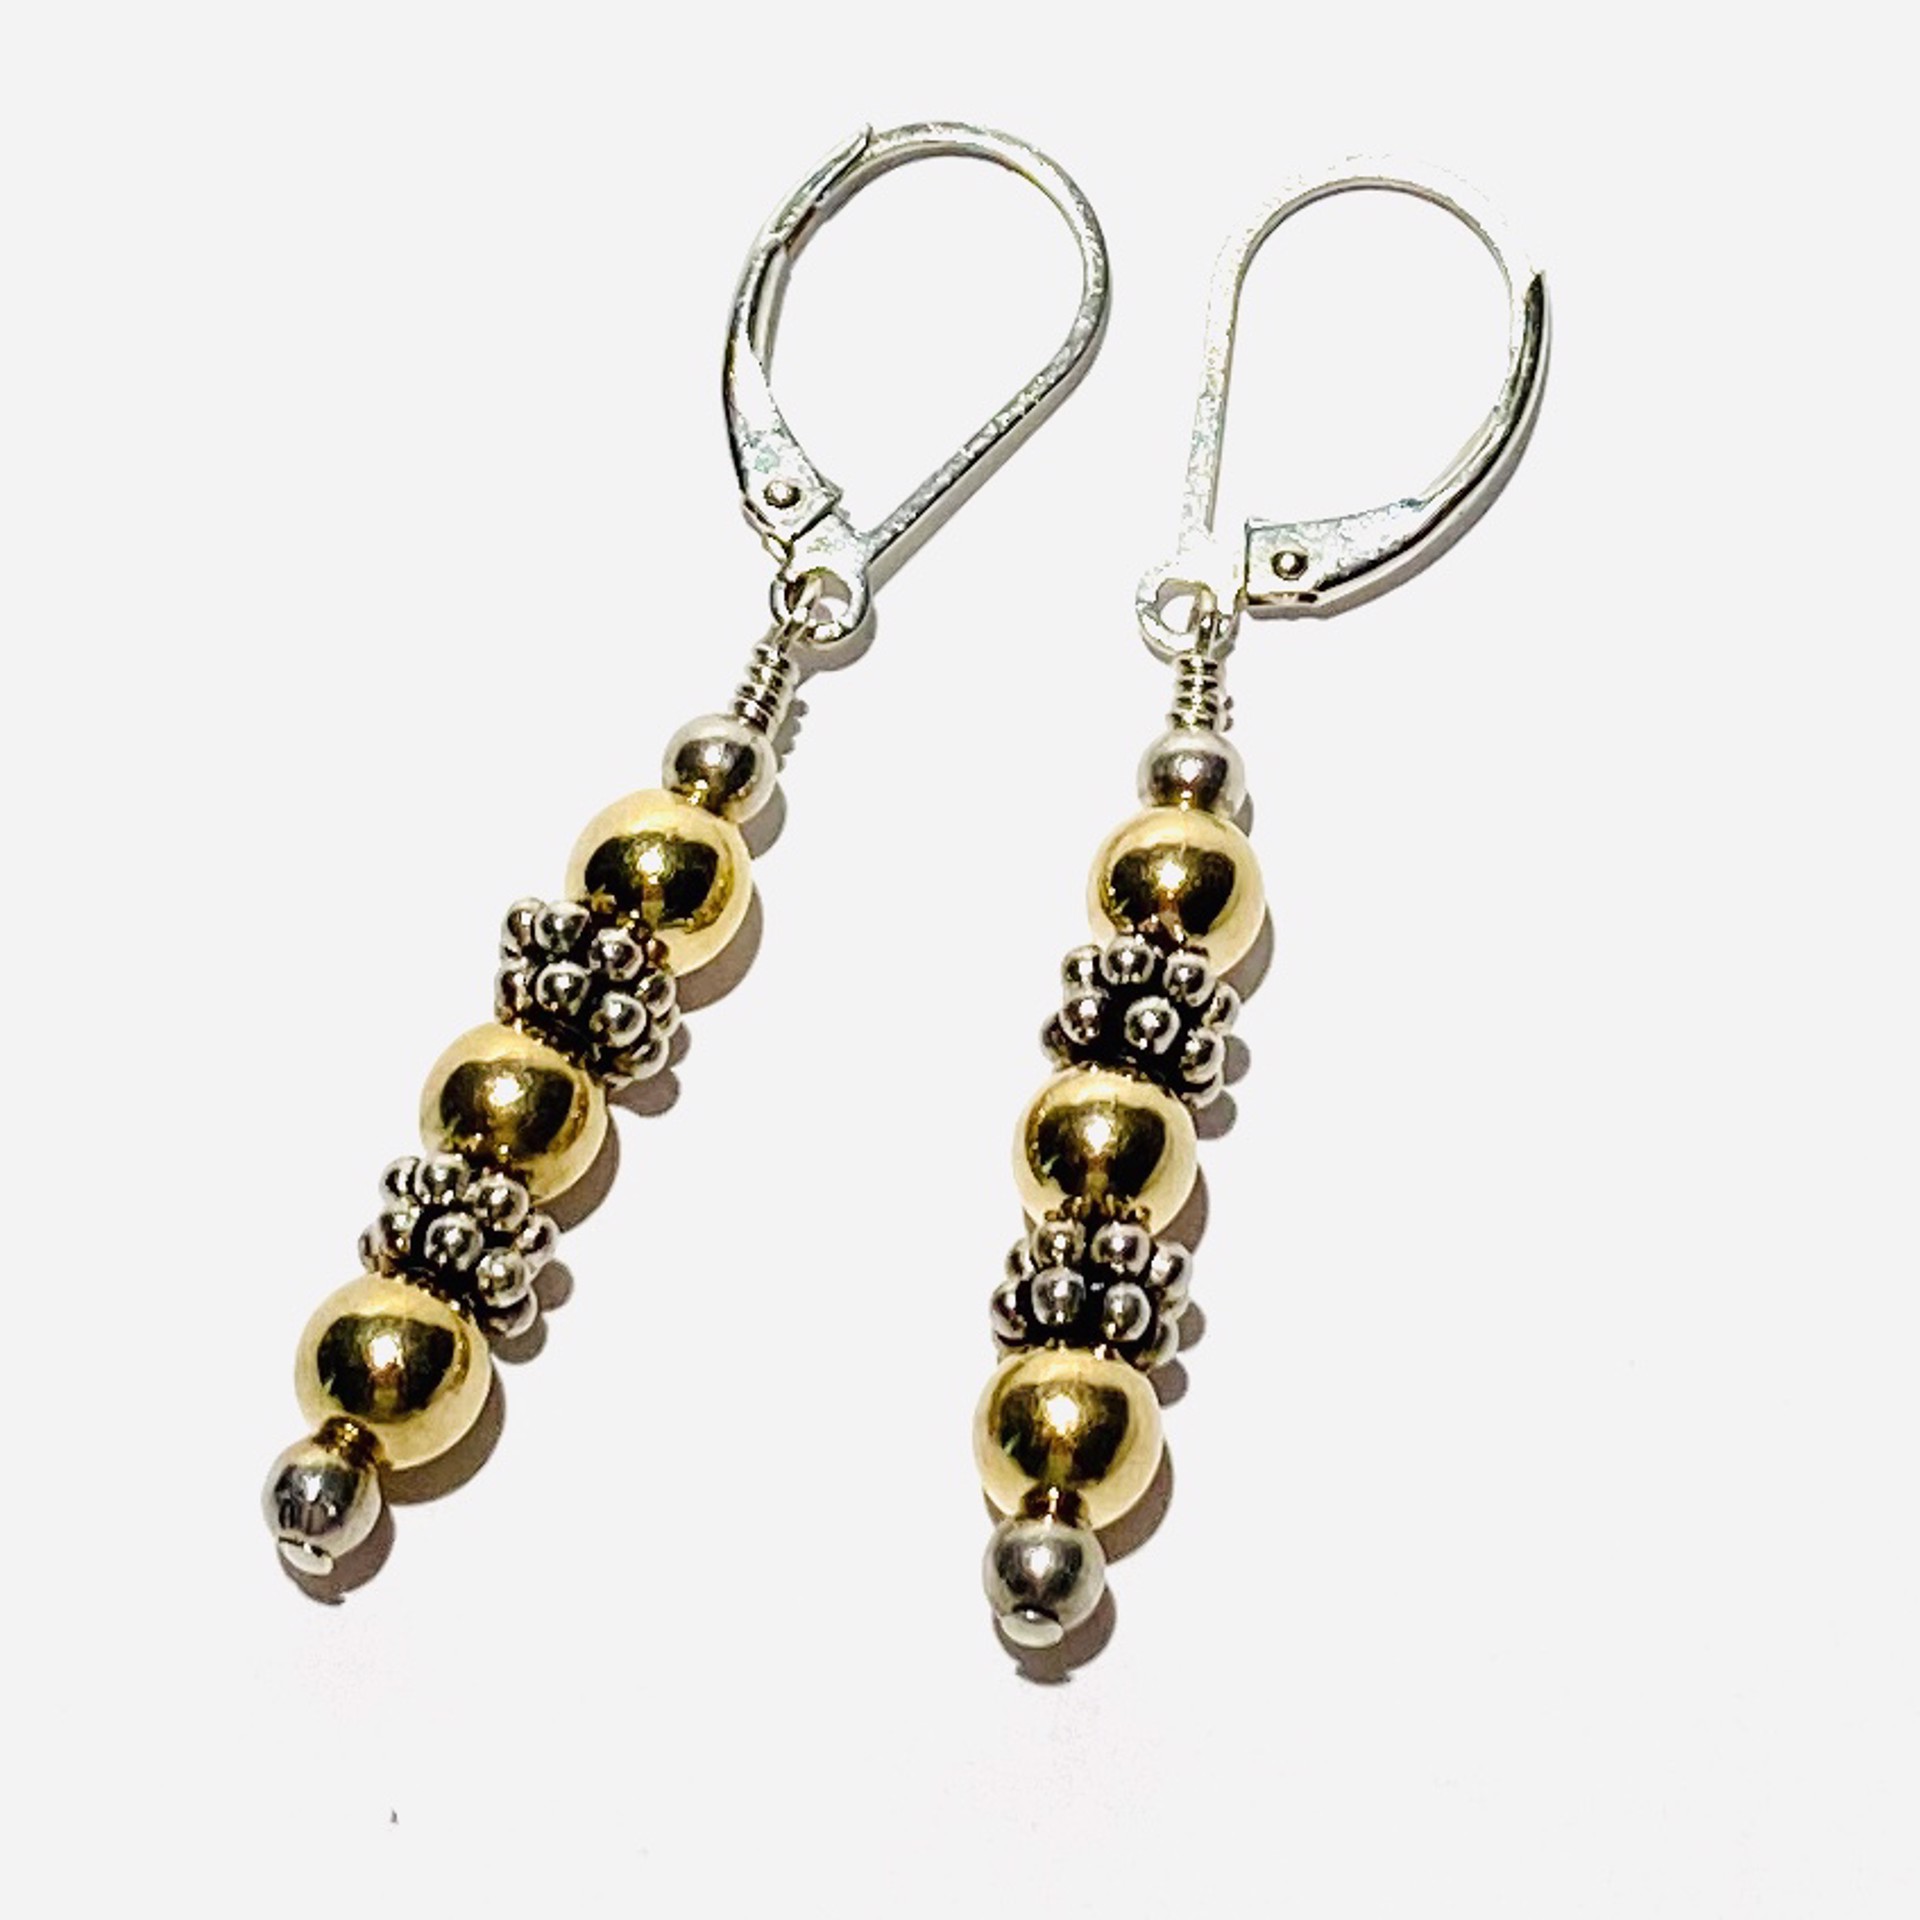 14K GF Beads on Silver Earrings, E88 by Shoshannah Weinisch